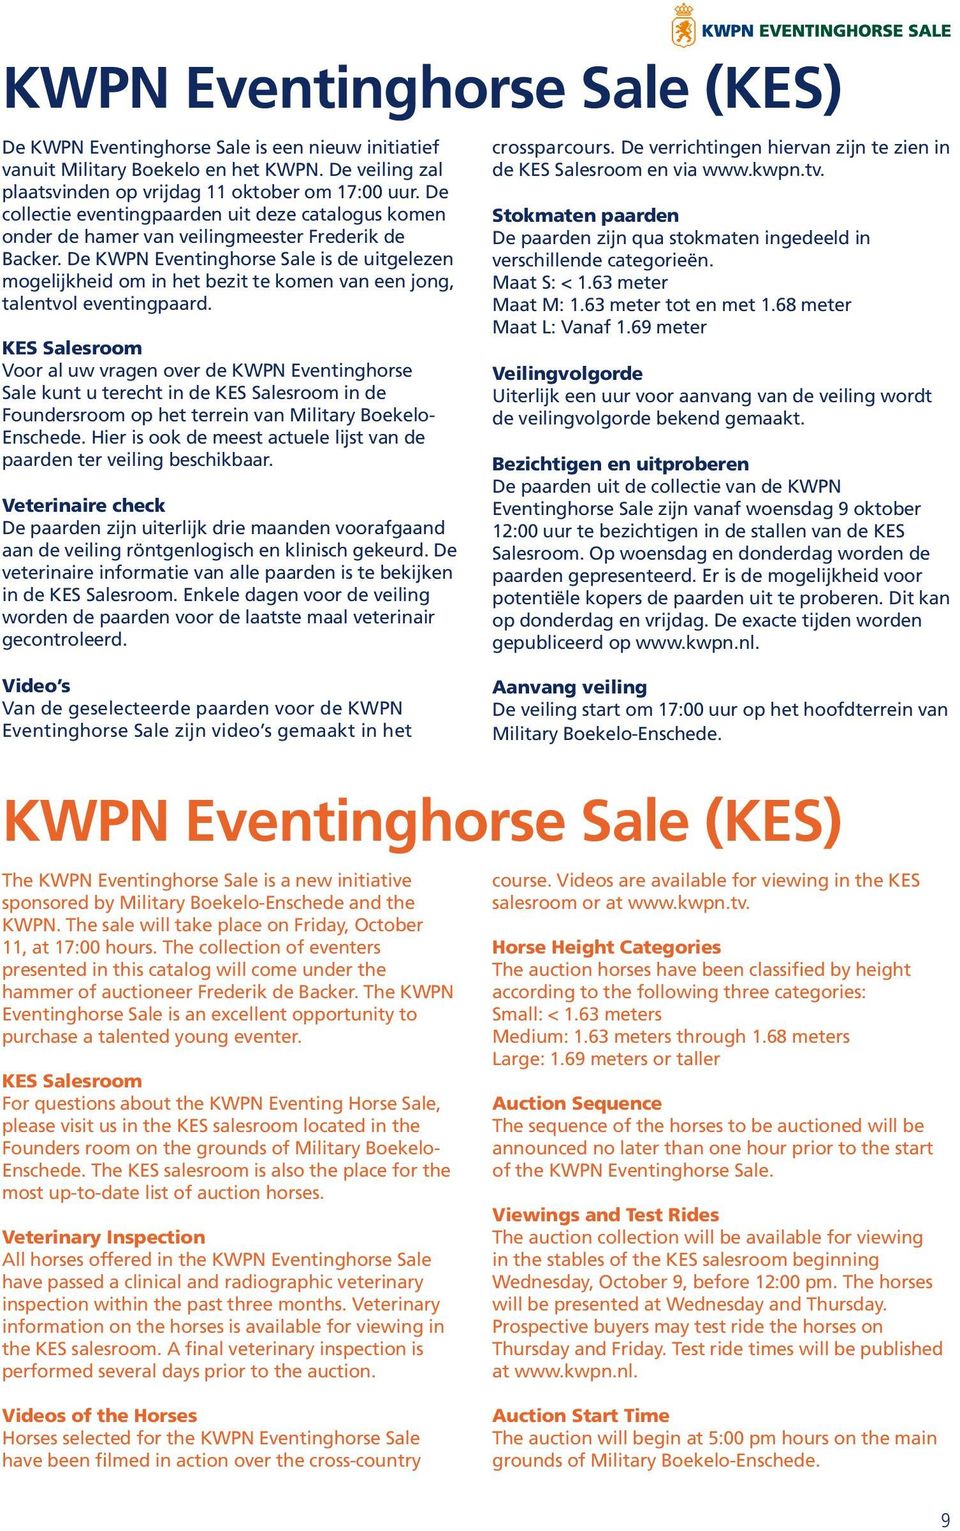 De KWPN Eventinghorse Sale is de uitgelezen mogelijkheid om in het bezit te komen van een jong, talentvol eventingpaard.